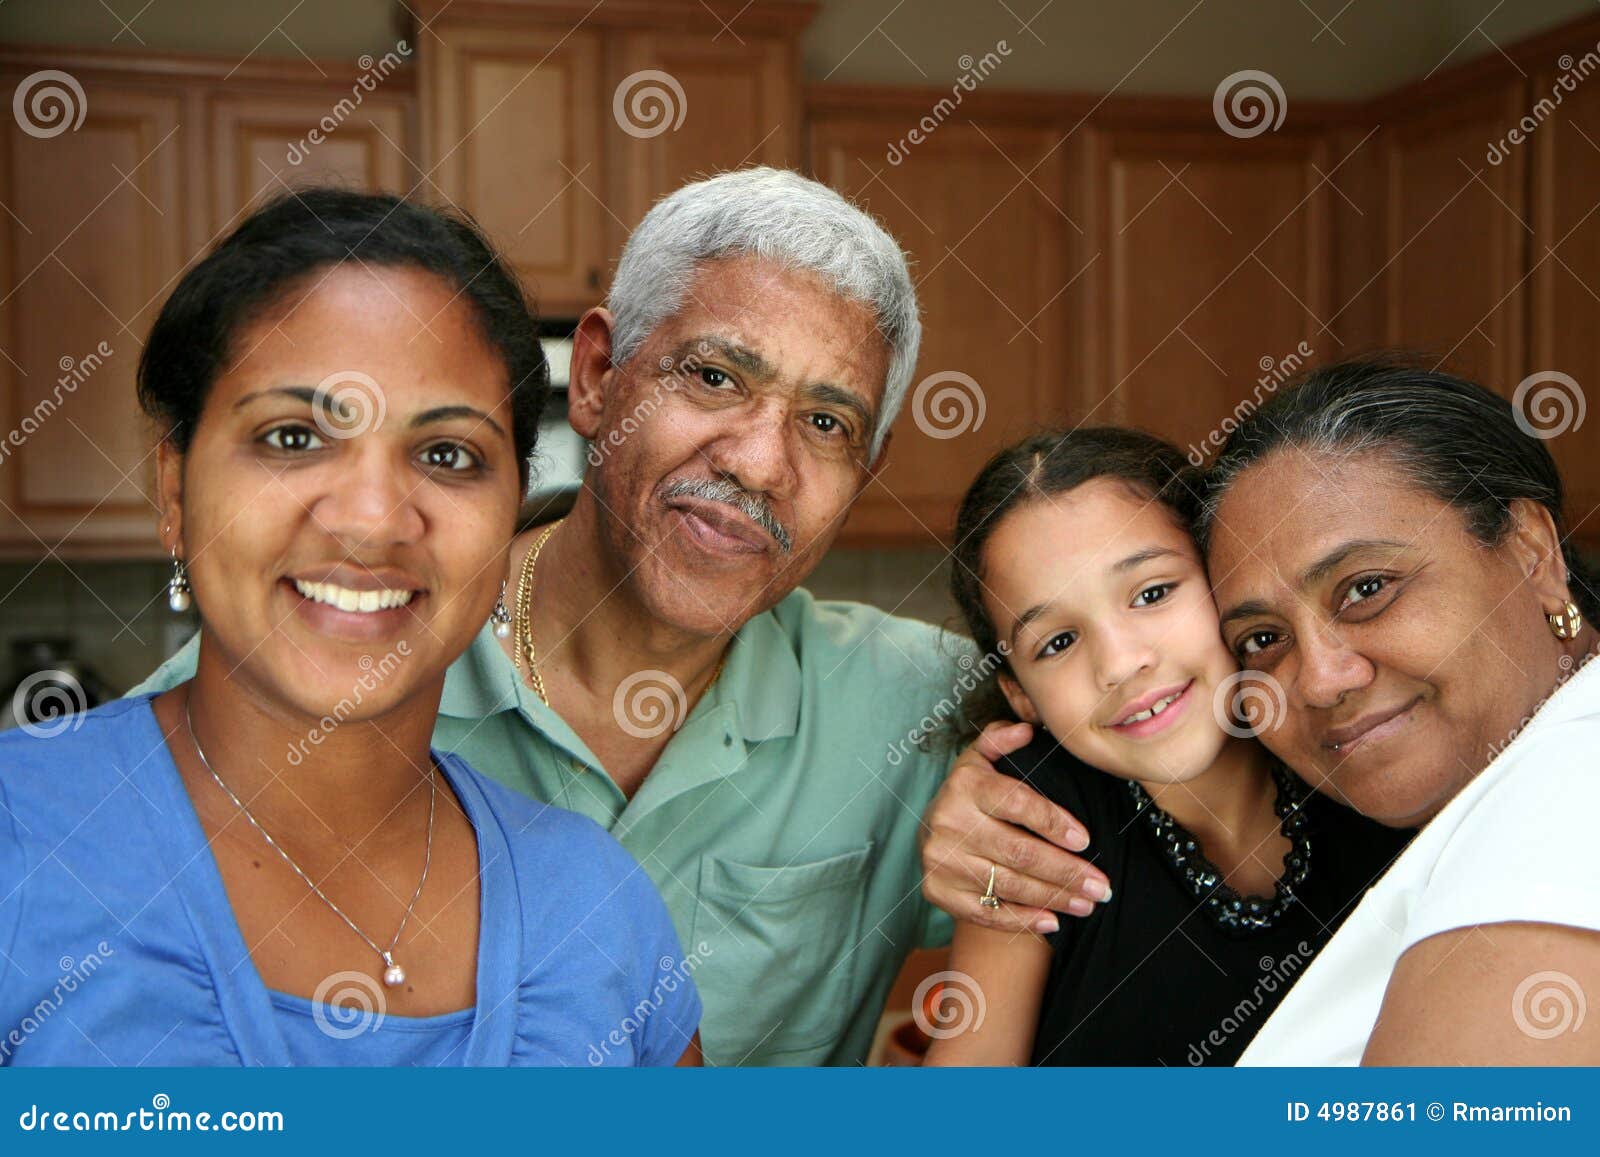 minority family